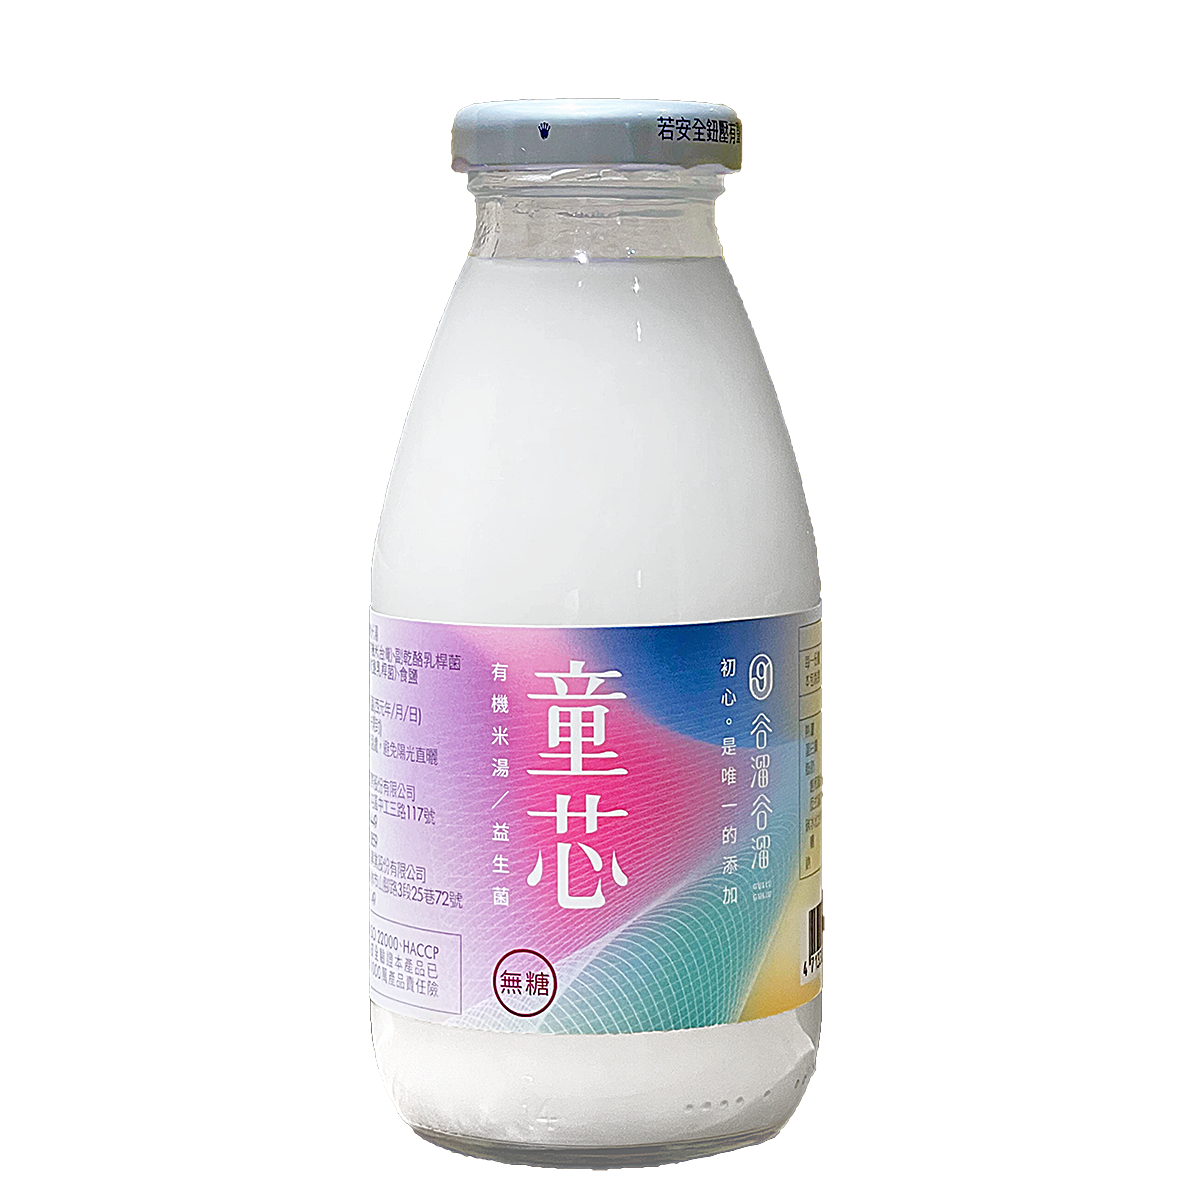 童芯(益生菌有機米湯)Tong-Xin(Probiotic Organic Rice Soup)